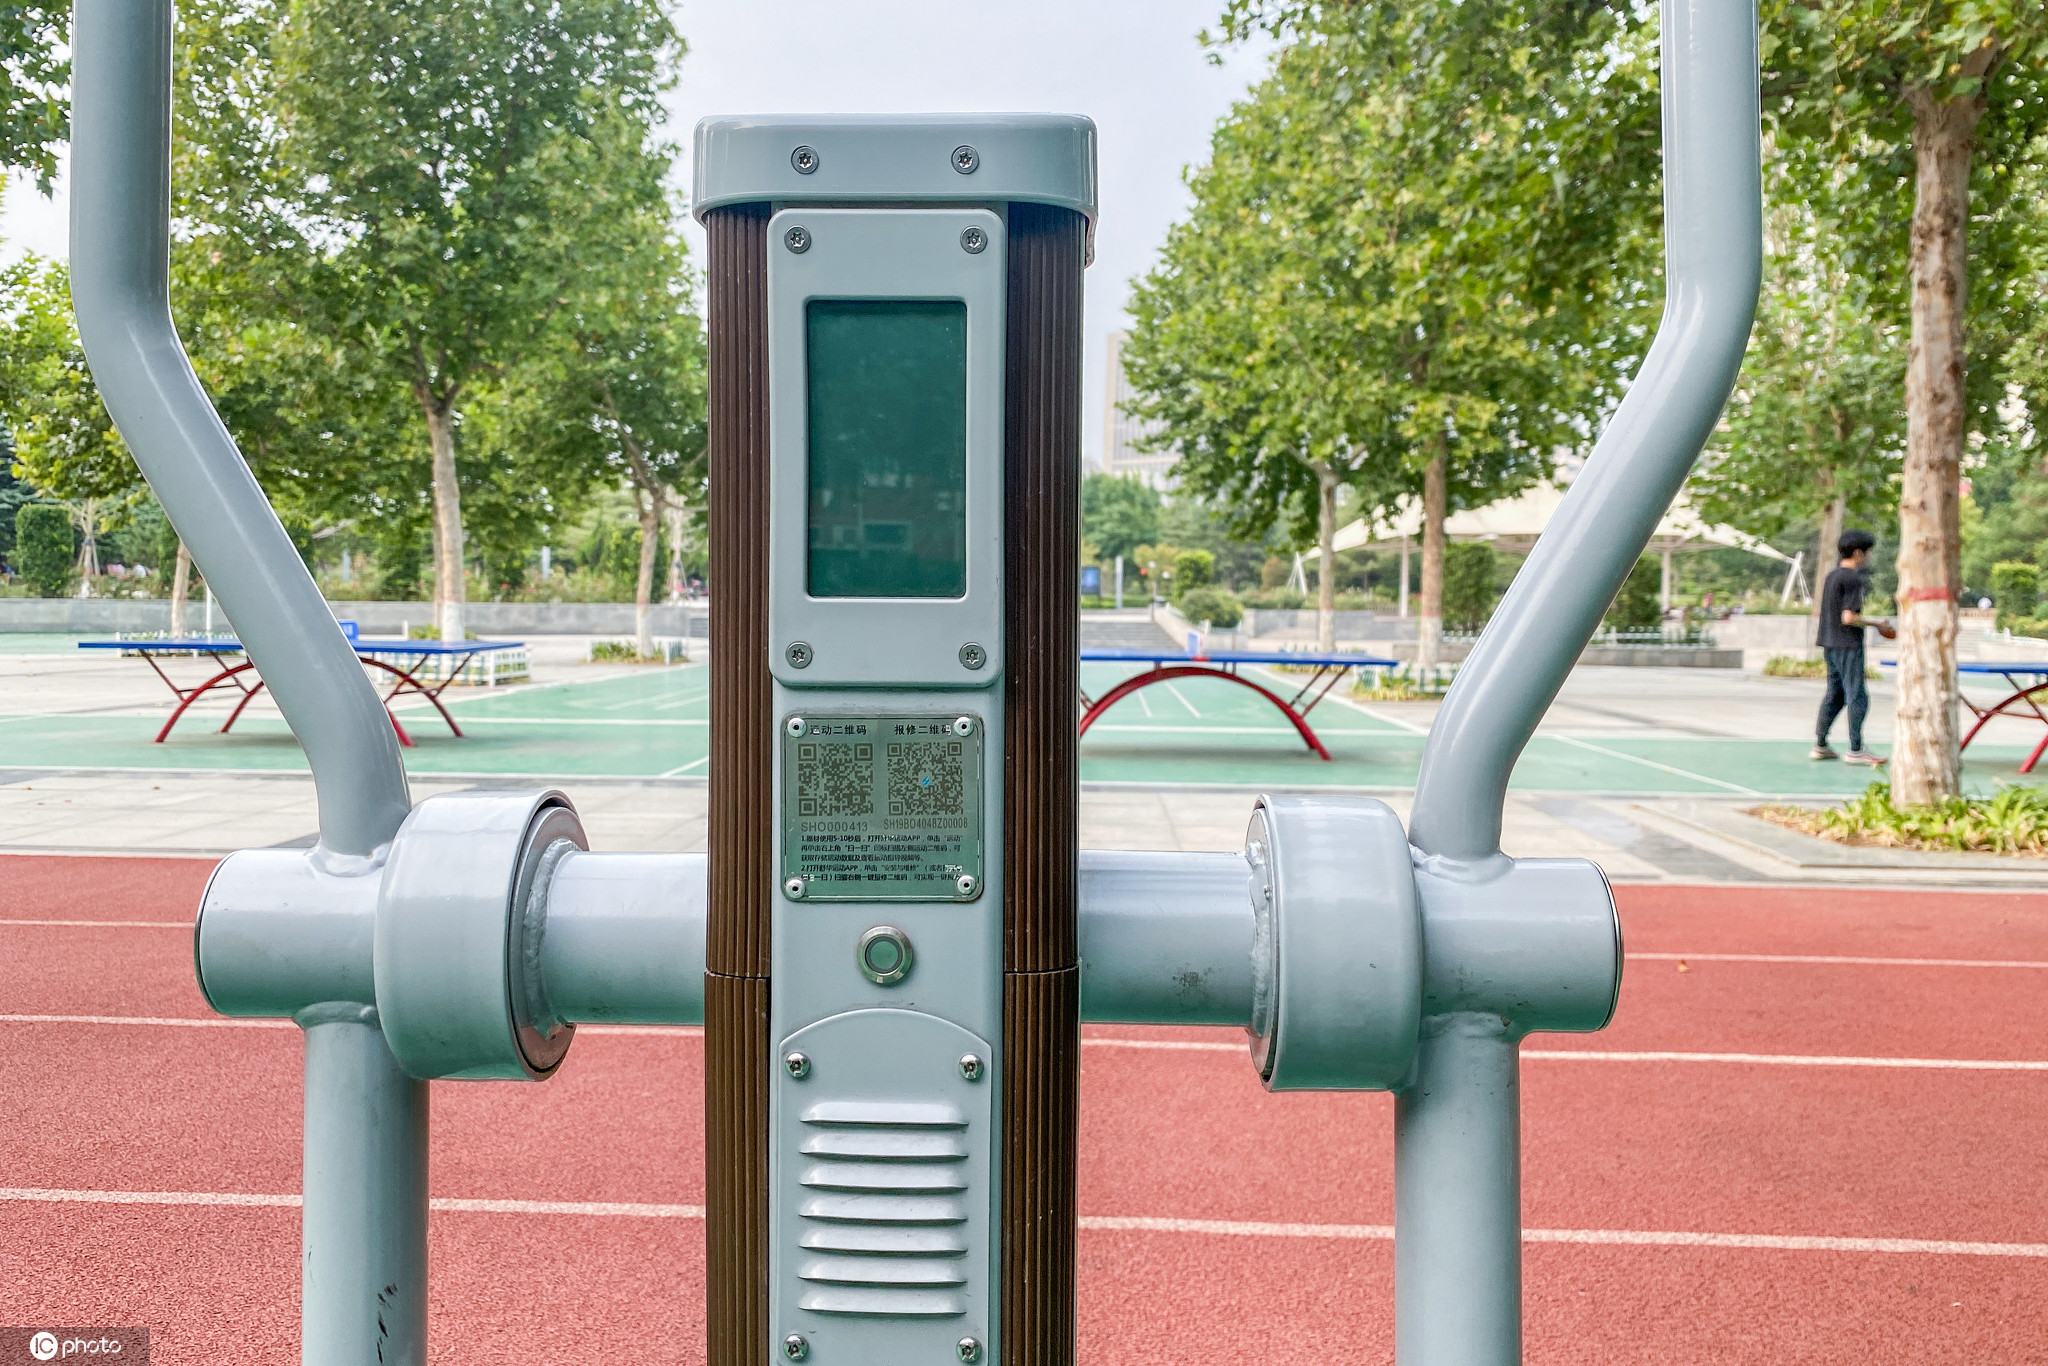 河南省郑州市，市区街头出现了“智能健身驿站”，这些坐落于公园广场的健身器材供市民免费使用。